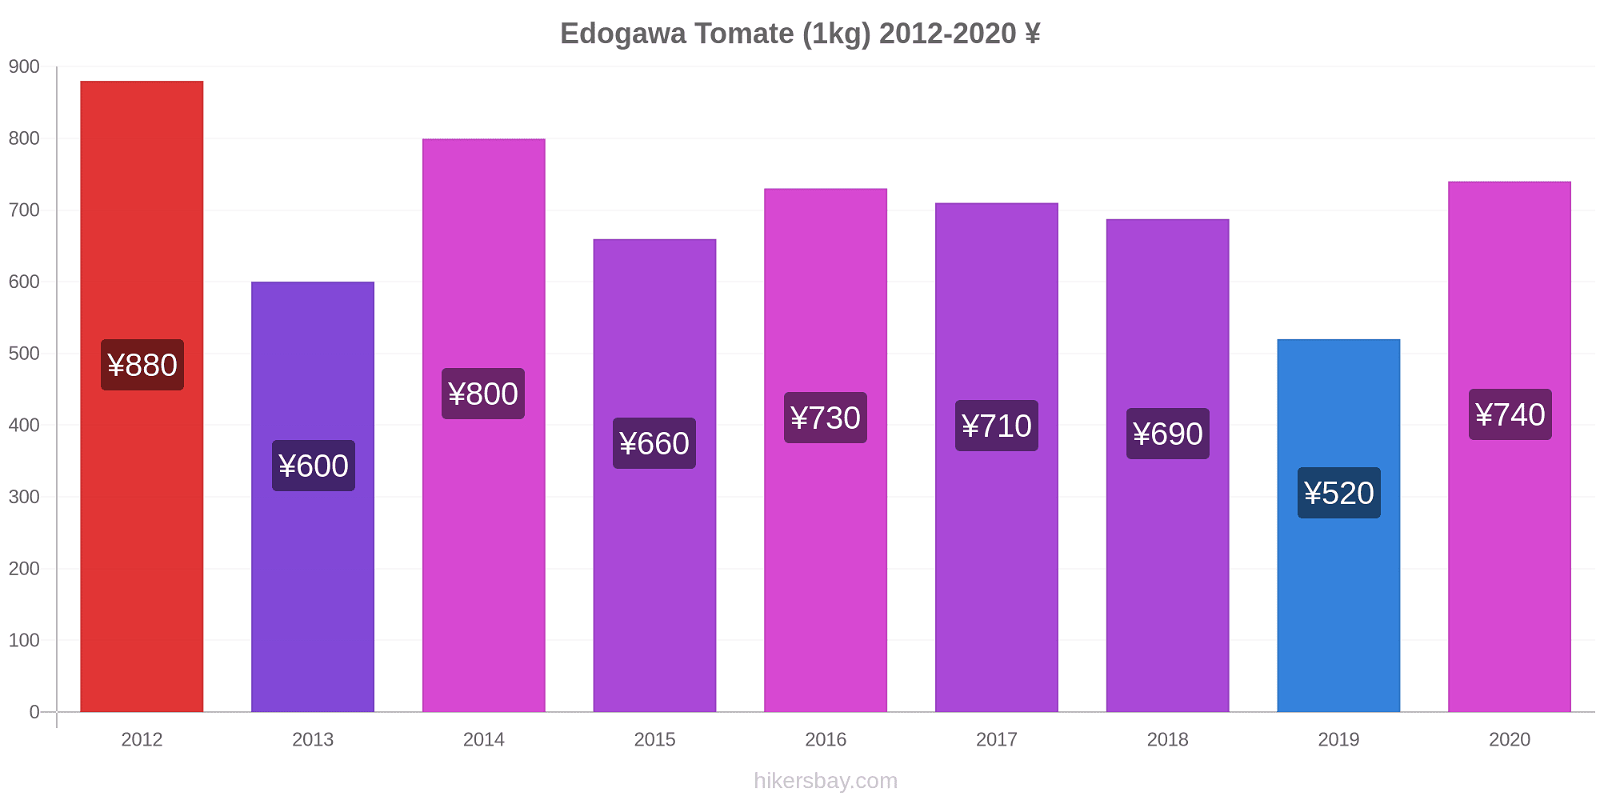 Edogawa cambios de precios Tomate (1kg) hikersbay.com